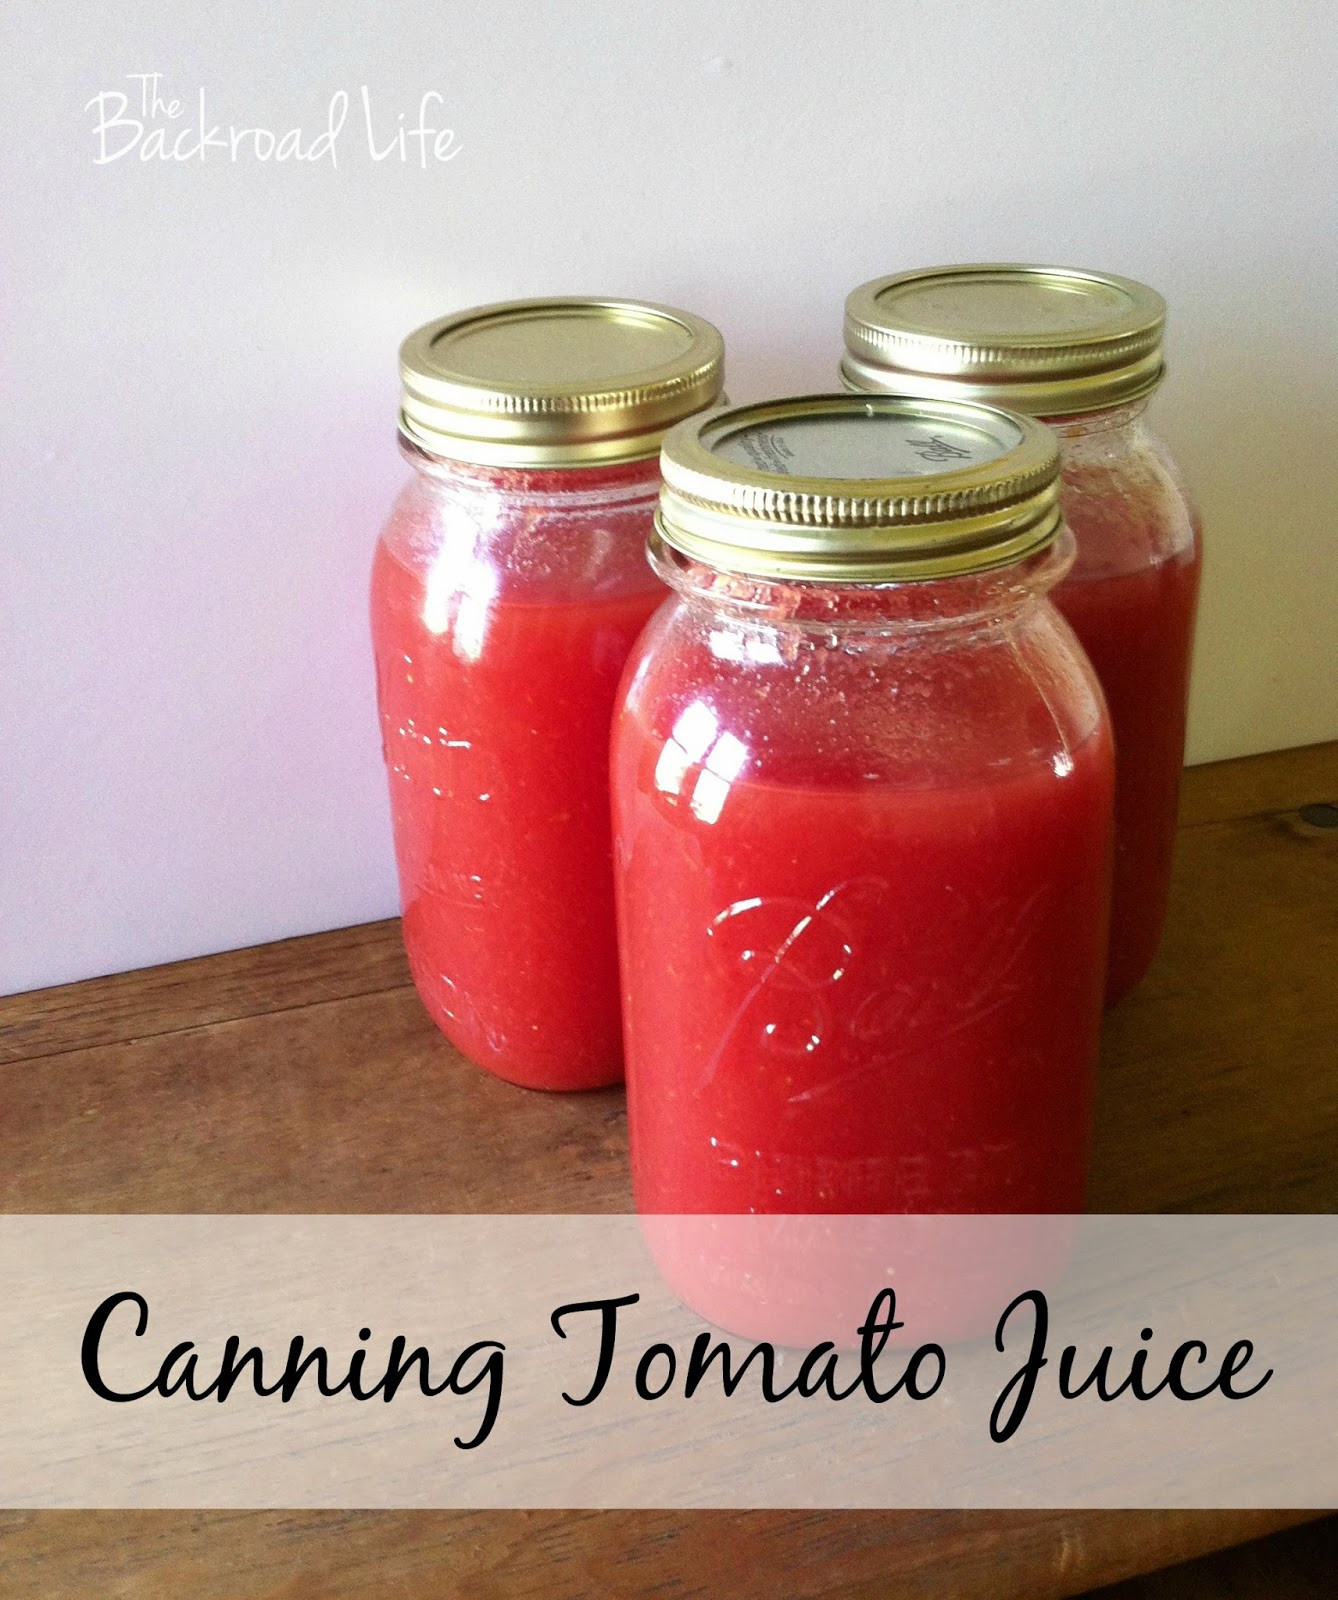 Canning Tomato Juice
 The Backroad Life Canning Tomato Juice